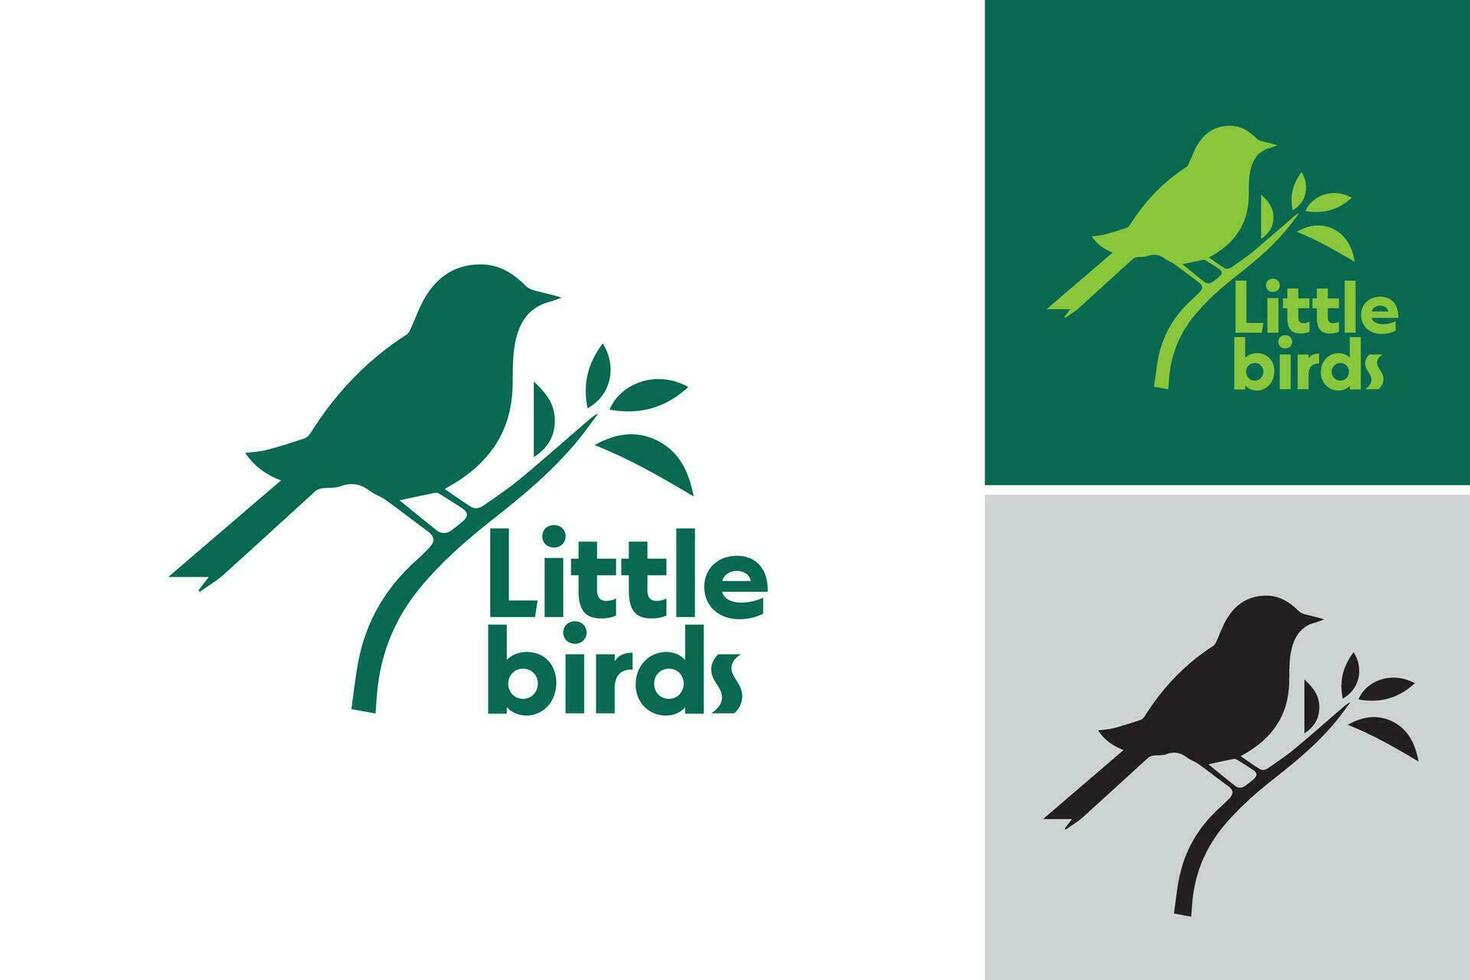 weinig vogelstand logo suggereert dat deze logo ontwerp Bedrijfsmiddel is een logo met klein vogel elementen. het is geschikt voor industrieën verwant naar natuur, vogels, of milieuvriendelijk merken. vector